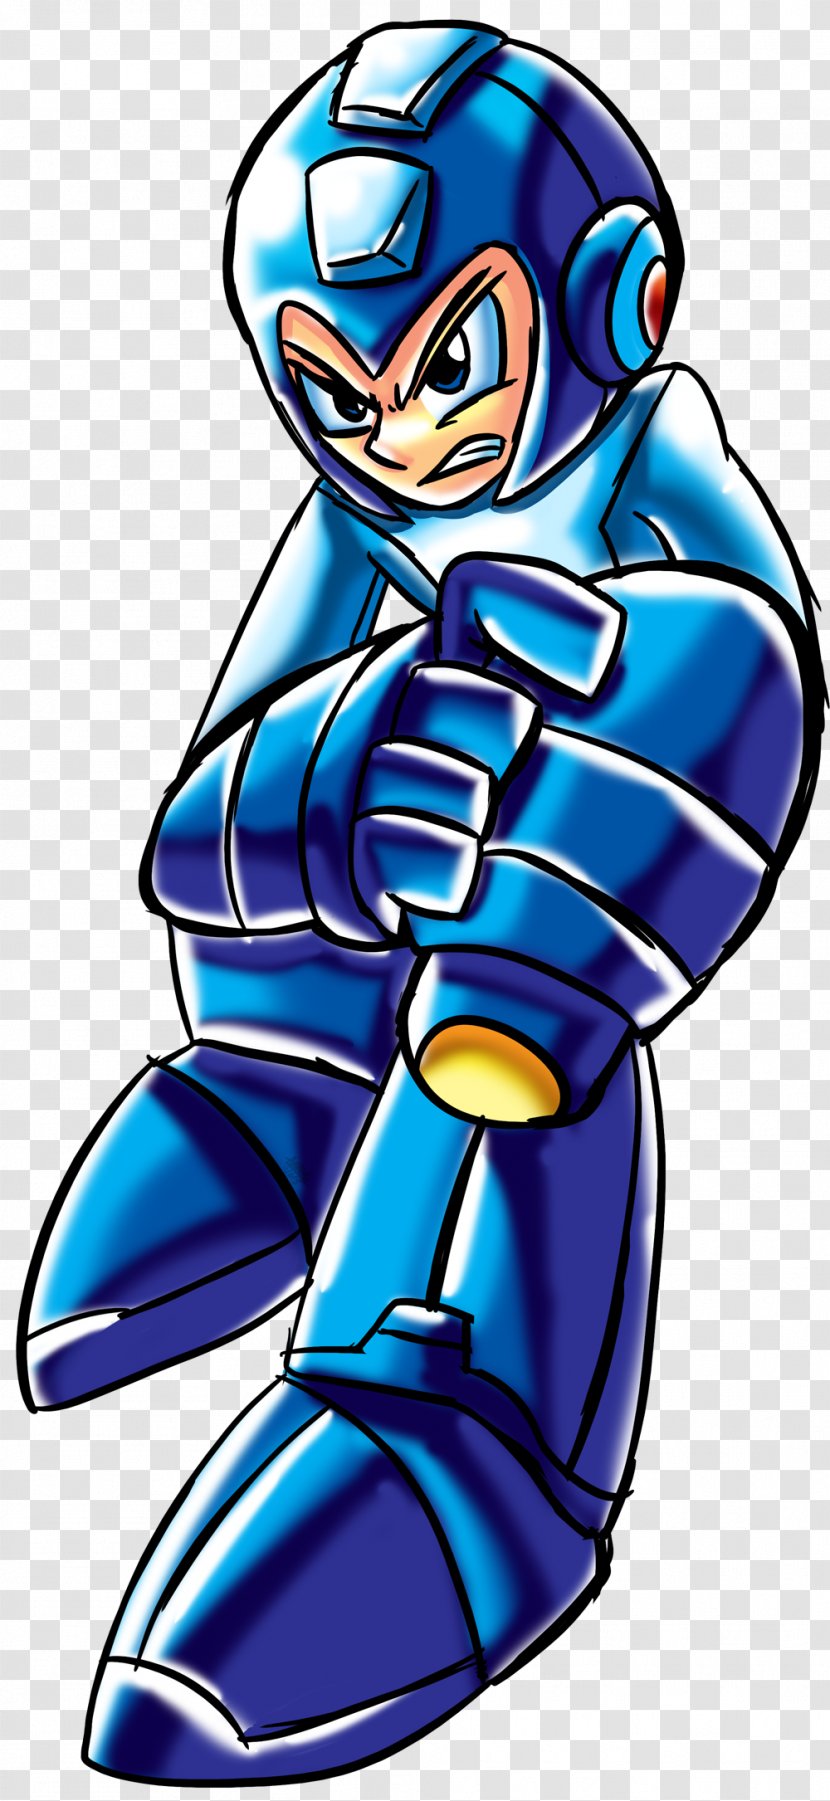 Cobalt Blue Character Fiction Clip Art - Mega Man 8 Transparent PNG